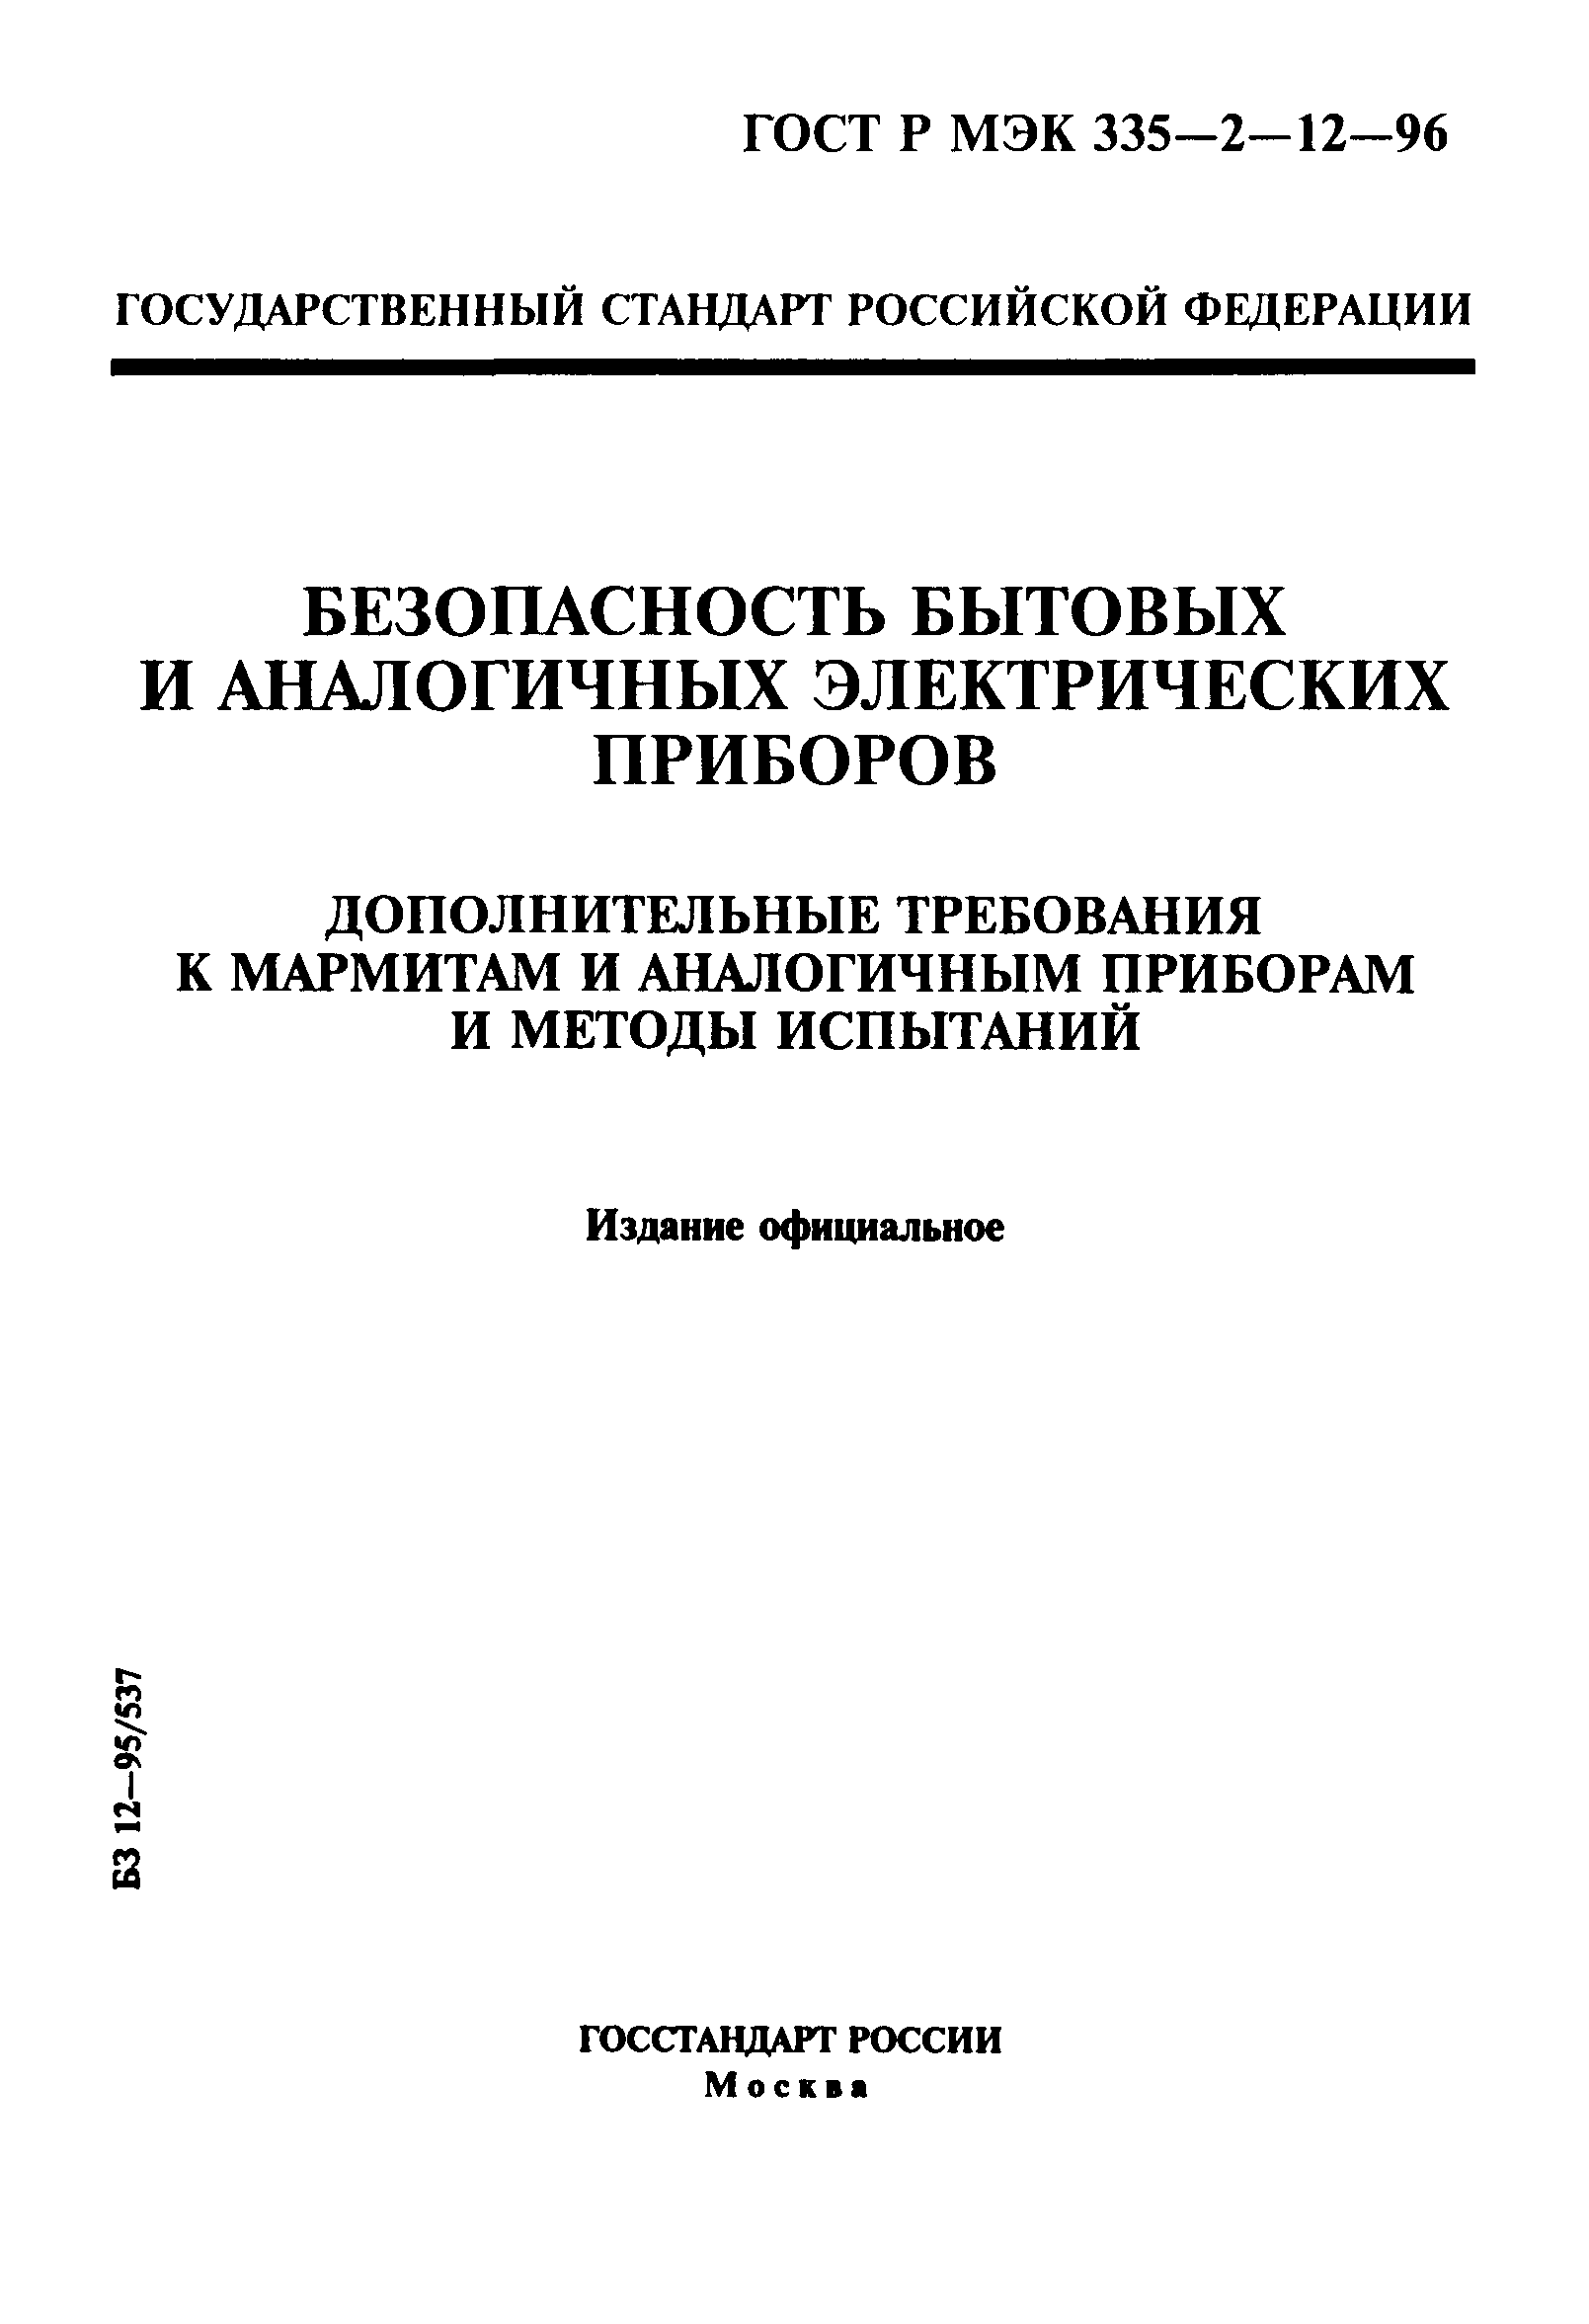 ГОСТ Р МЭК 335-2-12-96